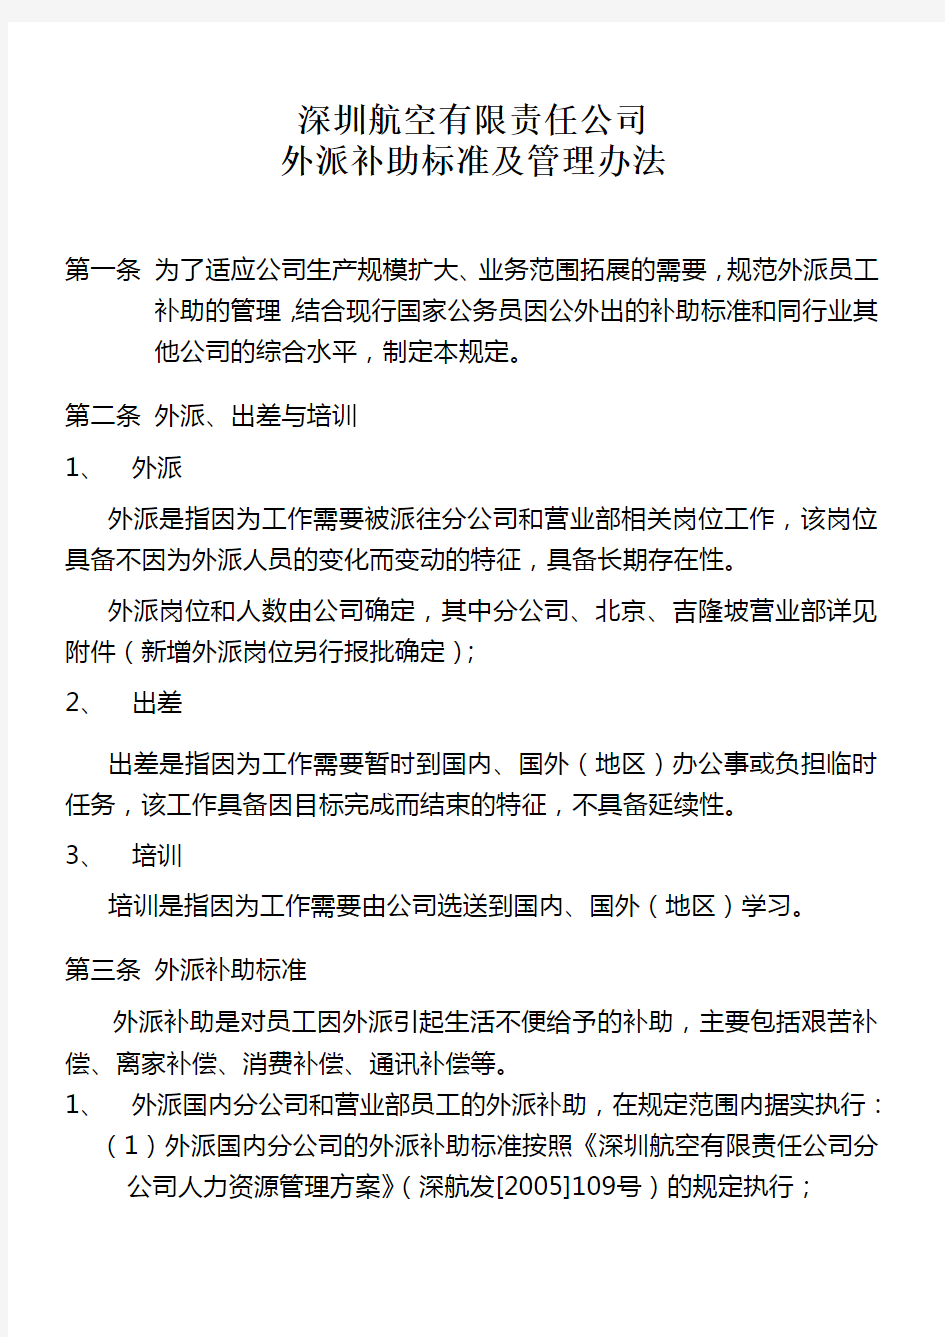 深圳航空有限责任公司外派人员补助发放办法